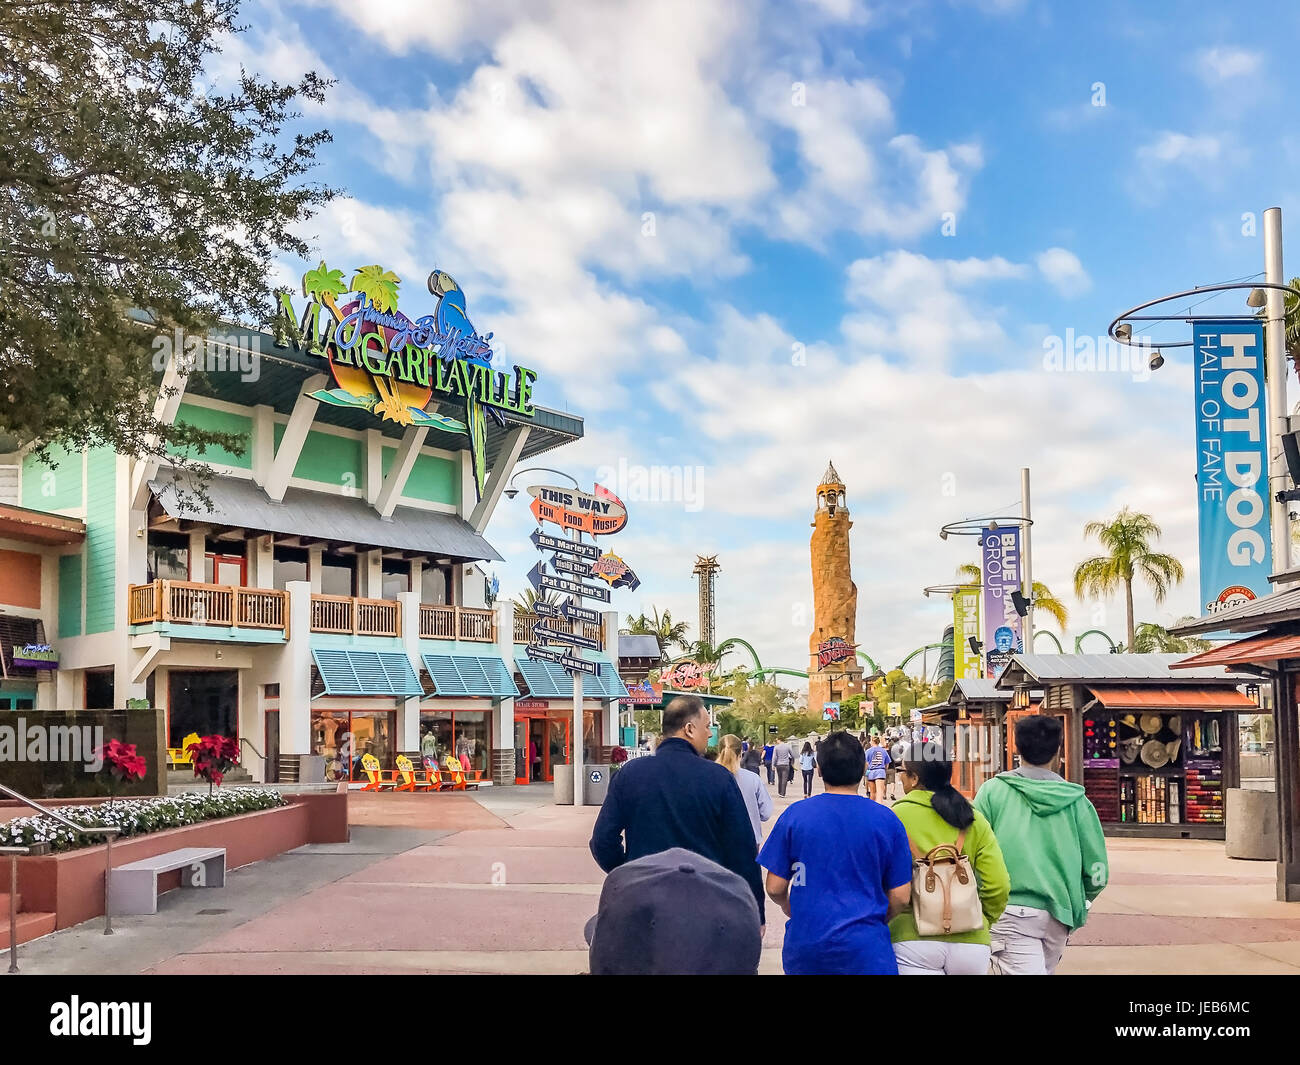 ORLANDO, Stati Uniti d'America - 05 gennaio 2017: l'isola dell' avventura della Universal Studios Orlando. Universal Studios Orlando è un parco a tema resort di Orlando, Florida. Foto Stock